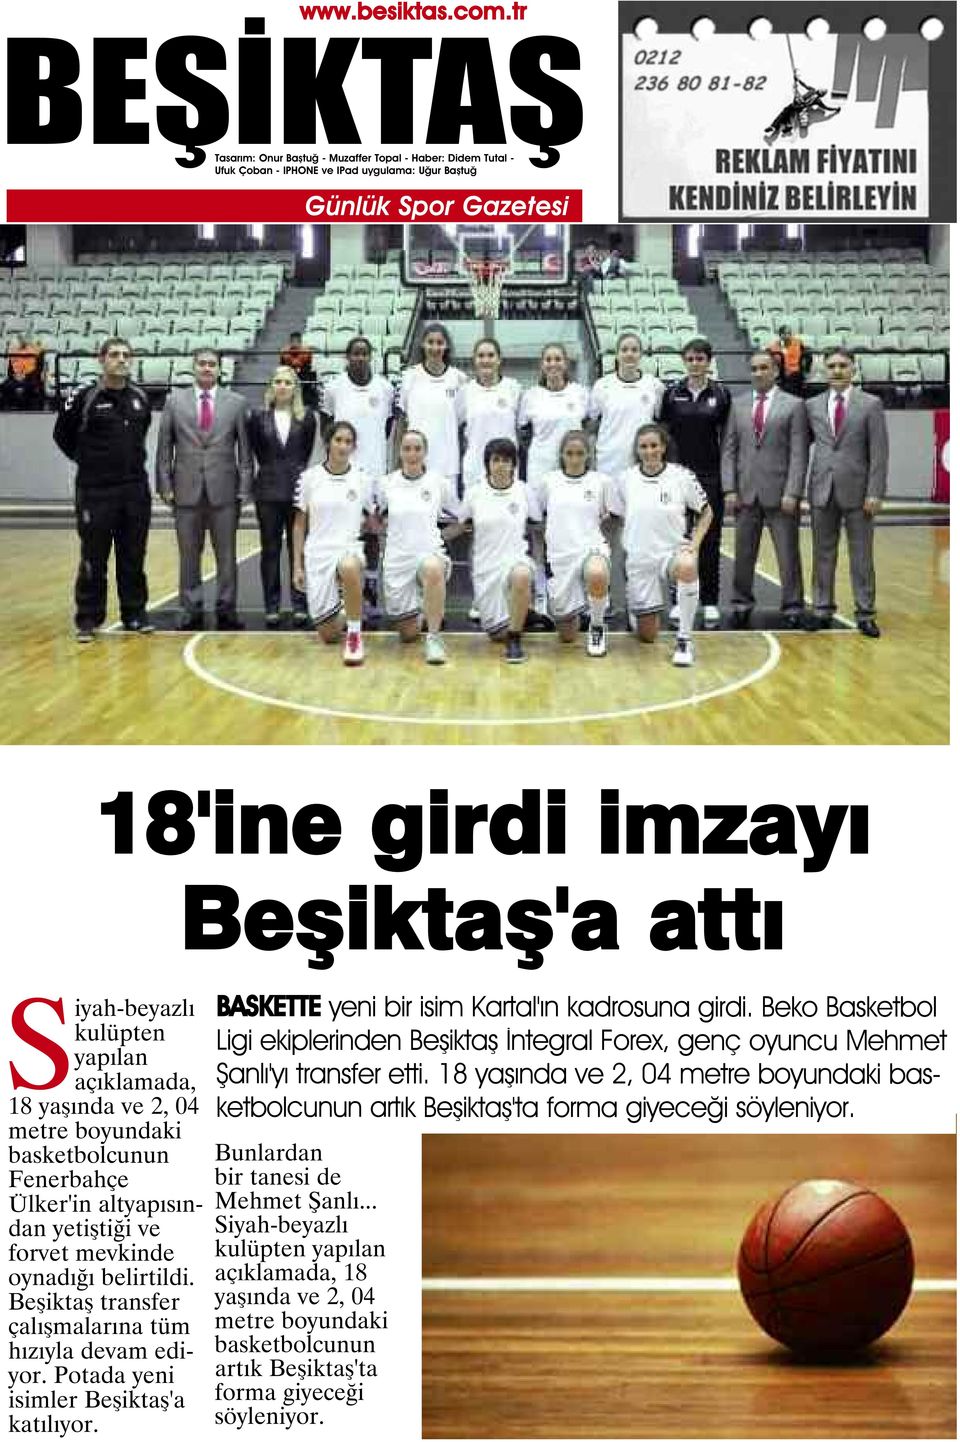 Beko Basketbol Ligi ekiplerinden Beşiktaş İntegral Forex, genç oyuncu Mehmet Şanlı'yı transfer etti.